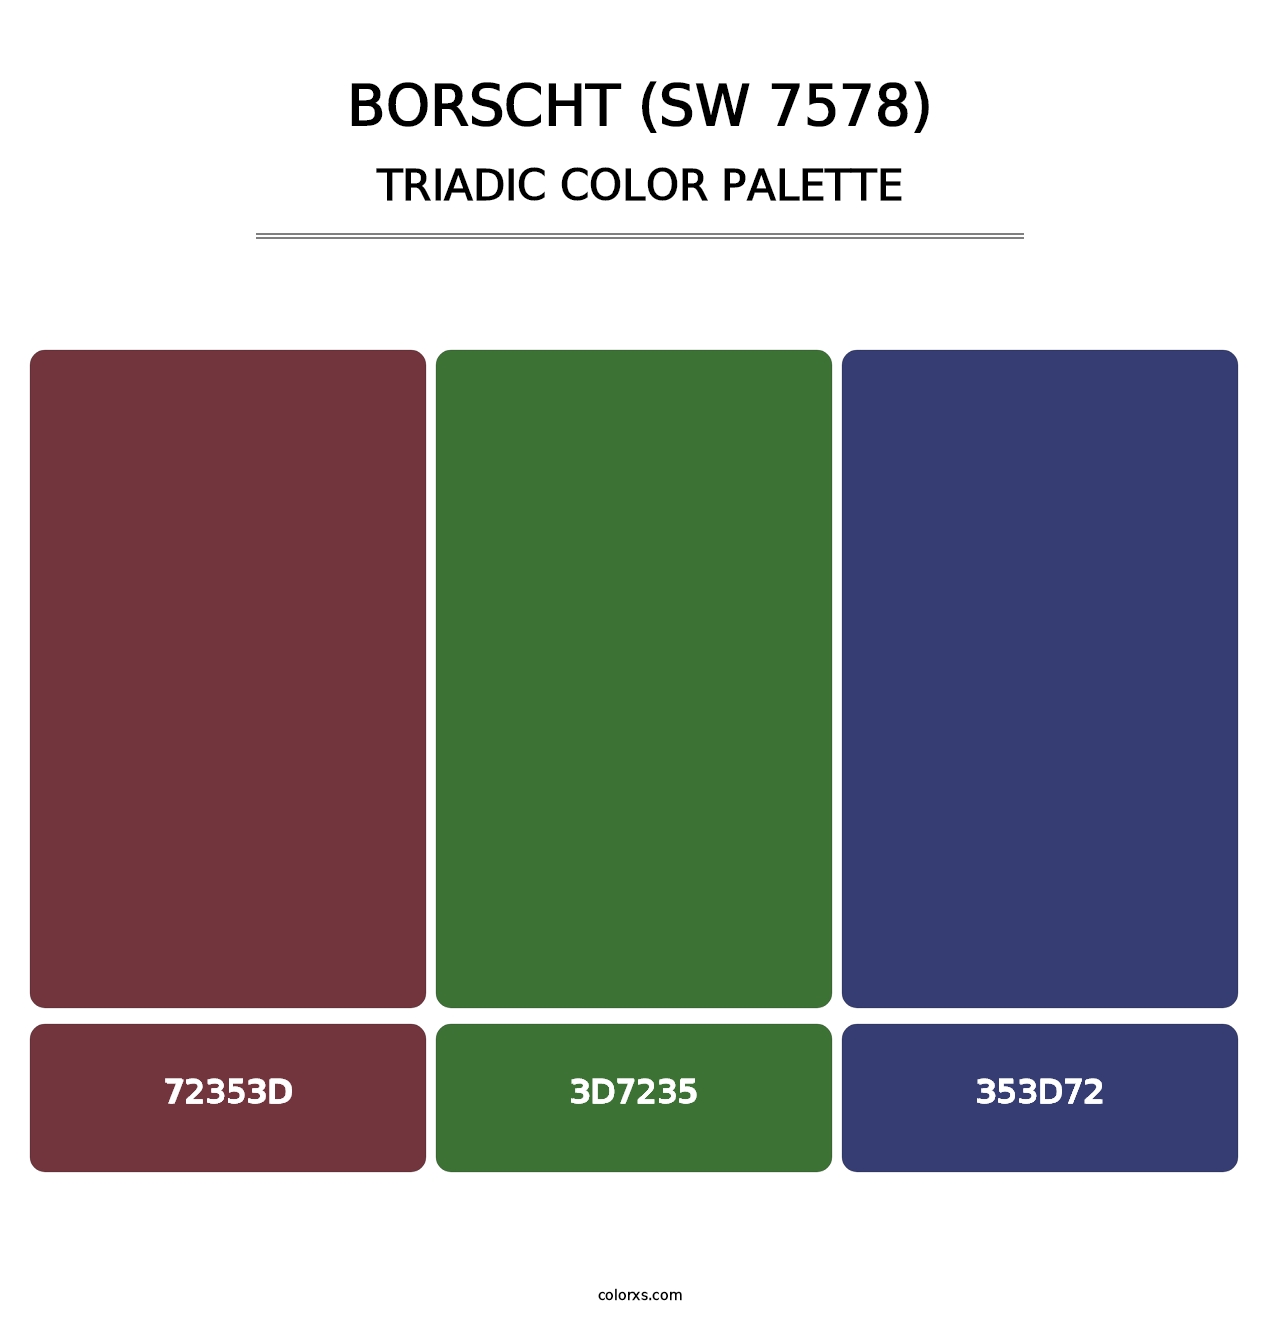 Borscht (SW 7578) - Triadic Color Palette